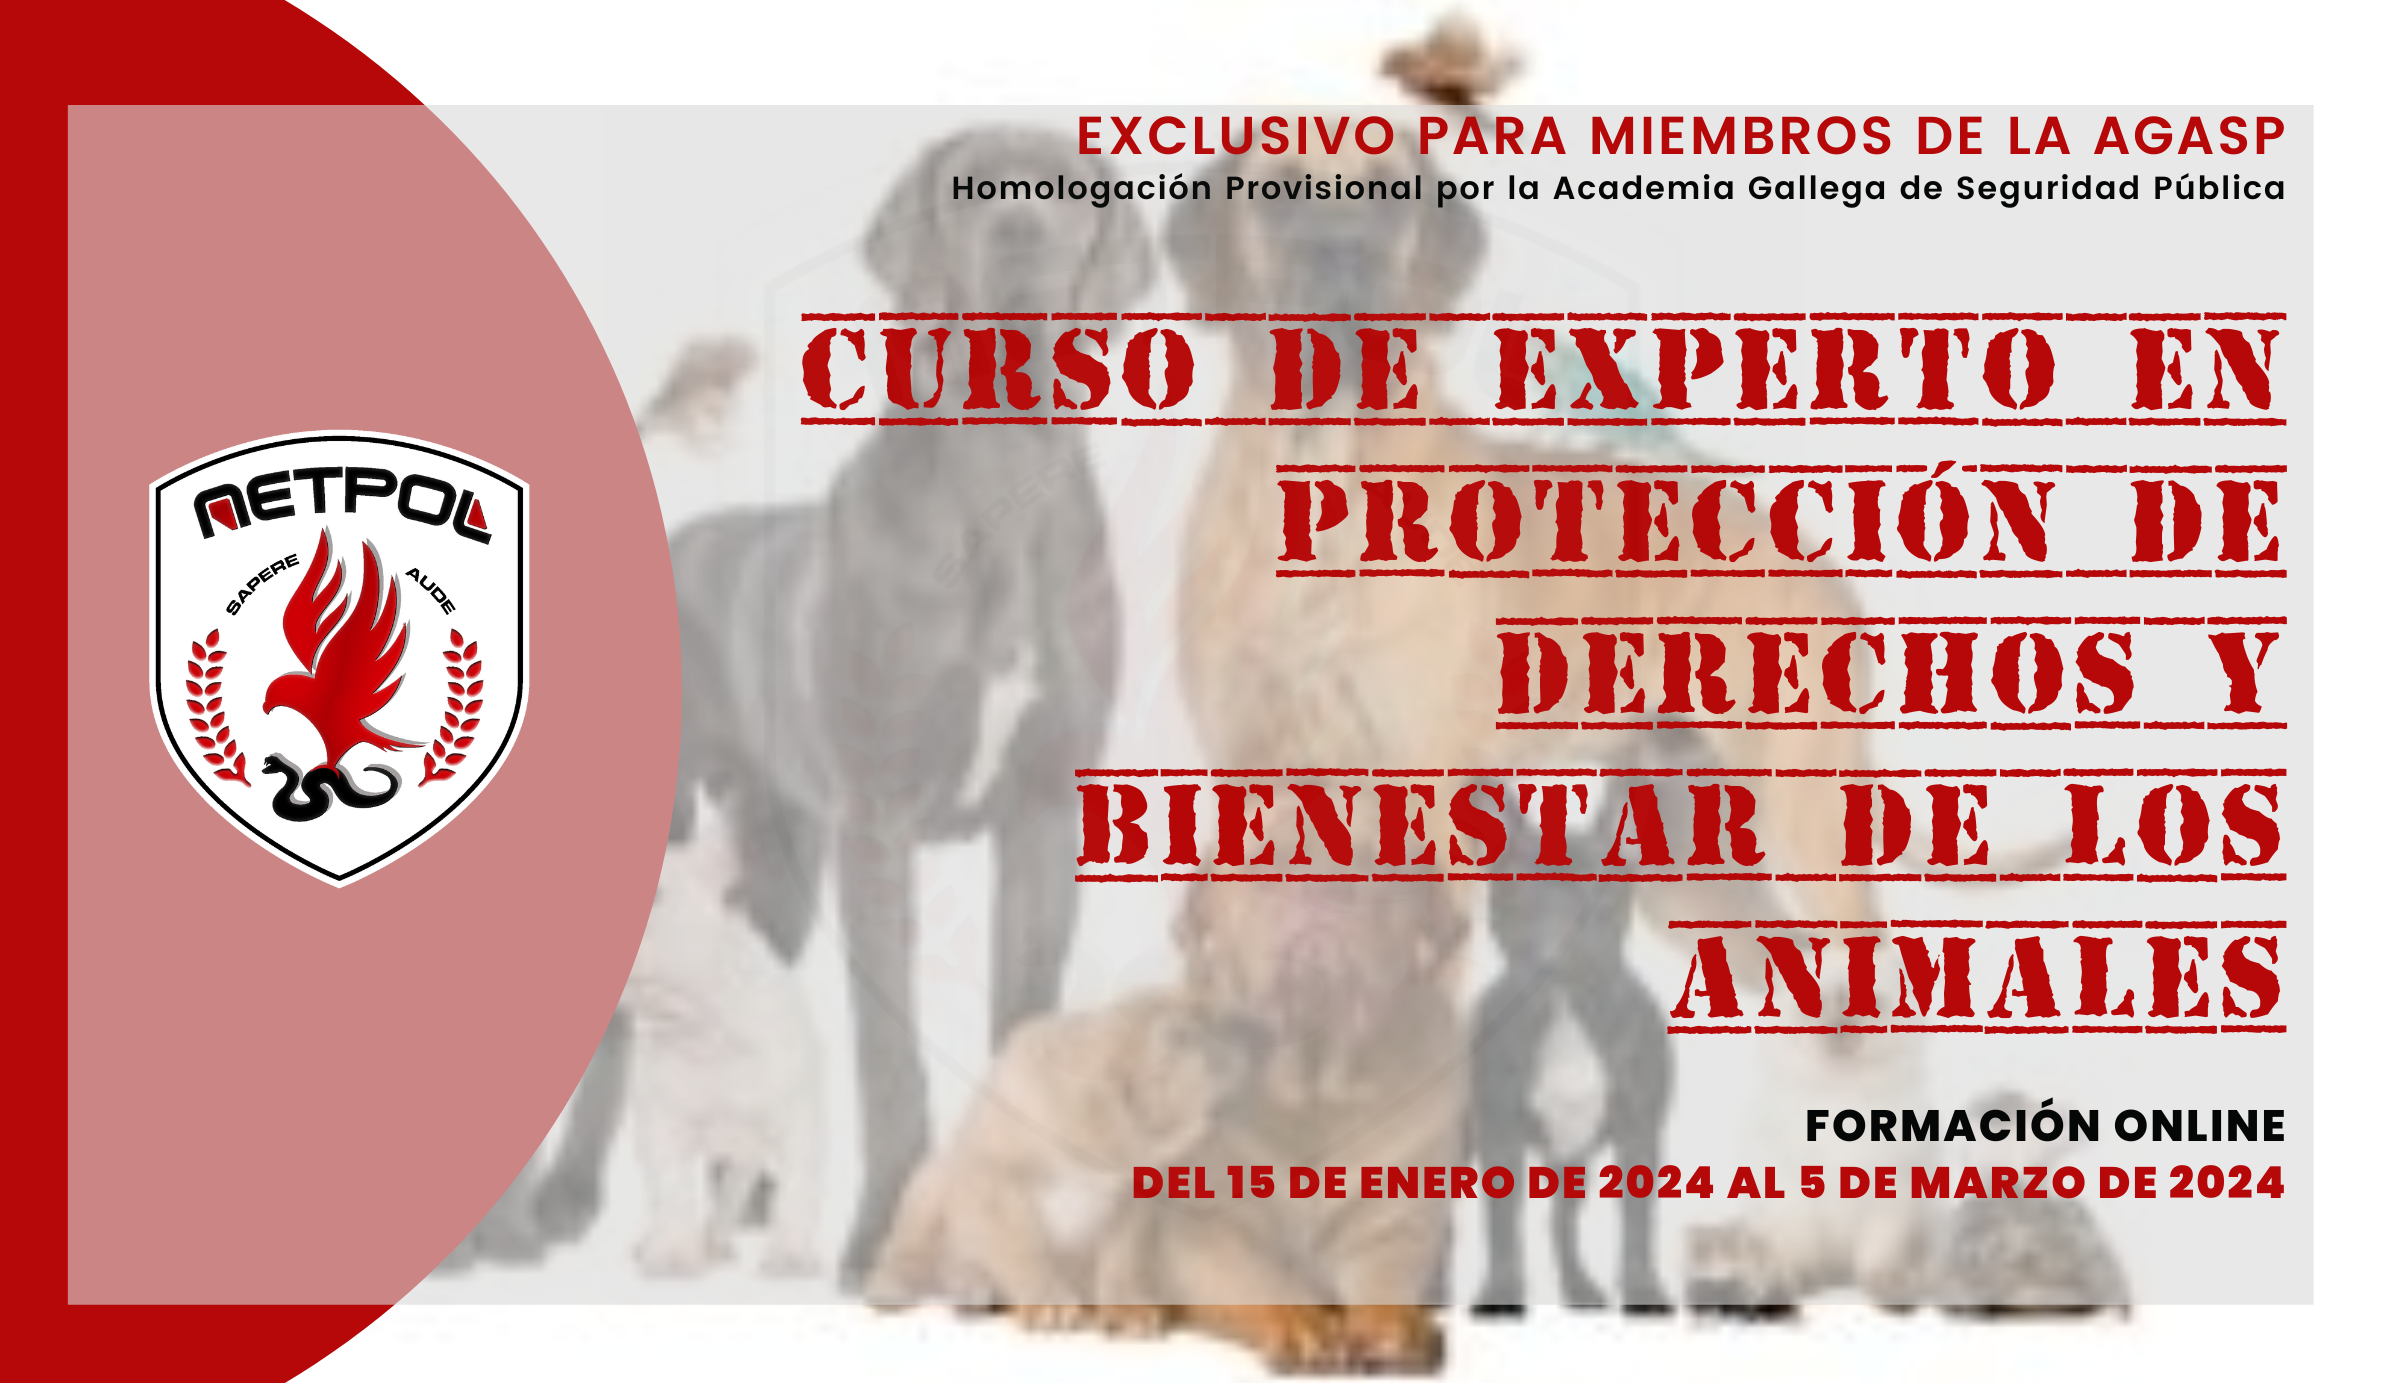 CURSO DE EXPERTO EN PROTECCIÓN DE DERECHOS Y BIENESTAR DE LOS ANIMALES.